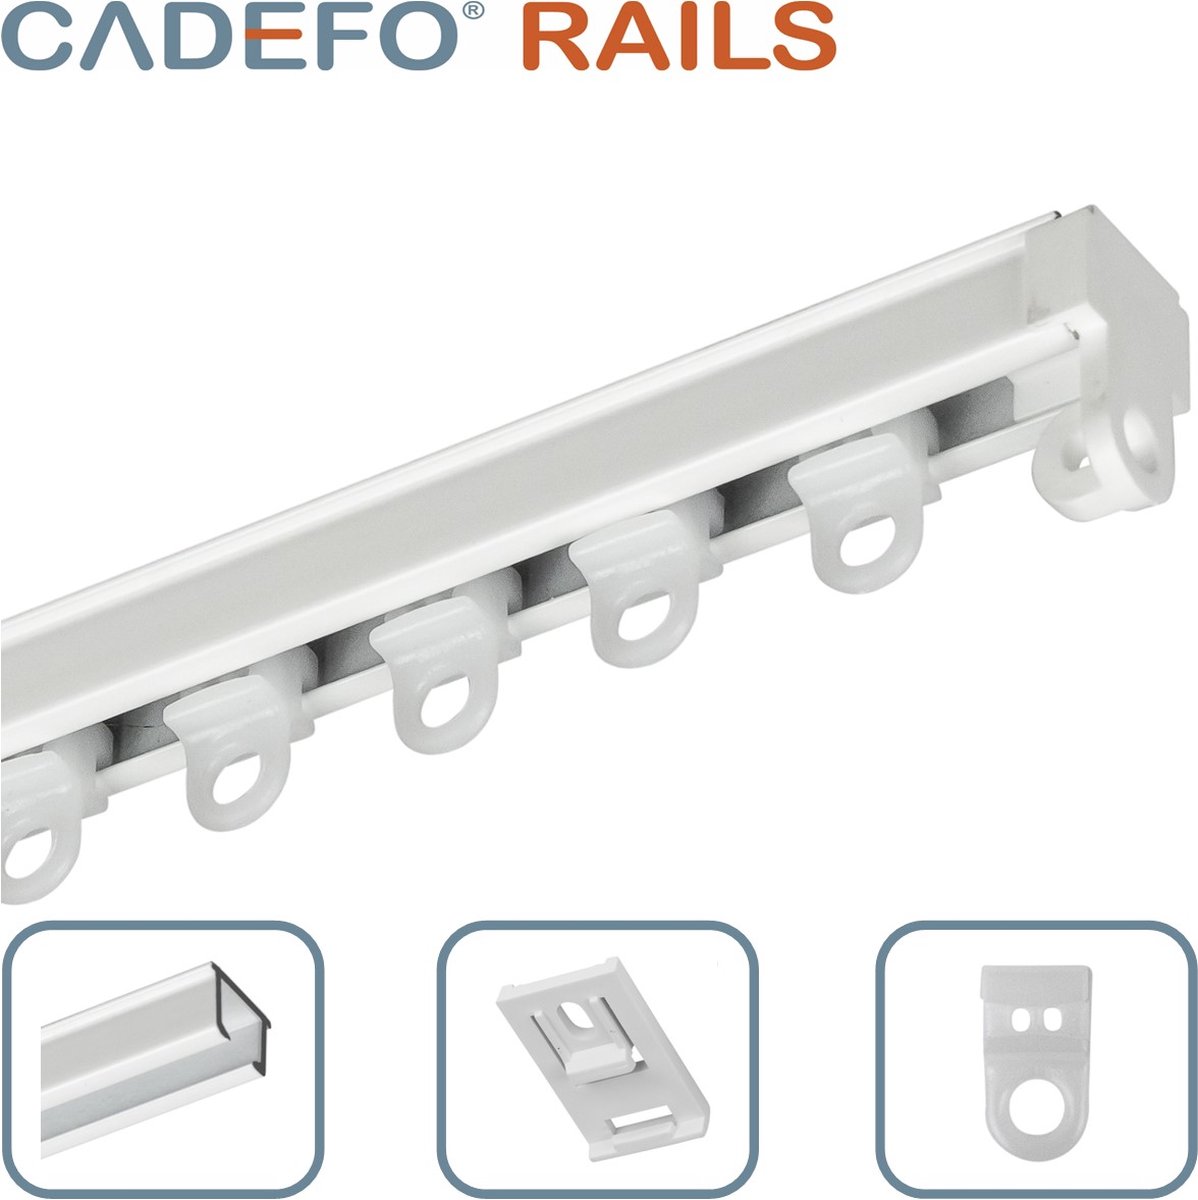 CADEFO RAILS (101 - 150 cm) Gordijnrails - Compleet op maat! - UIT 1 STUK - Leverbaar tot 6 meter - Plafondbevestiging - Lengte 115 cm